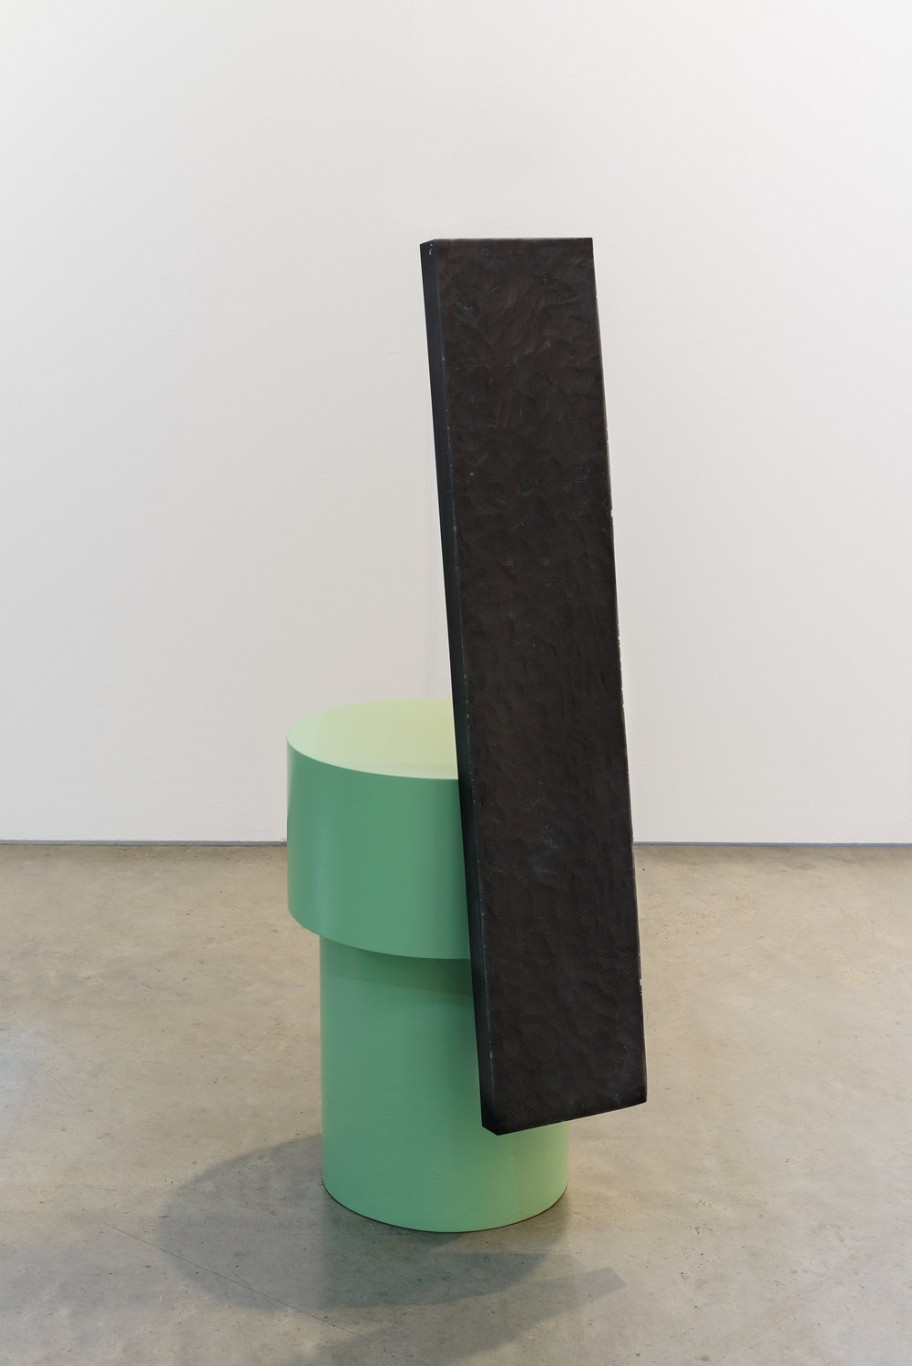 Werner Feiersinger Untitled, 2019steel, epoxy, carbon fibre, primer 